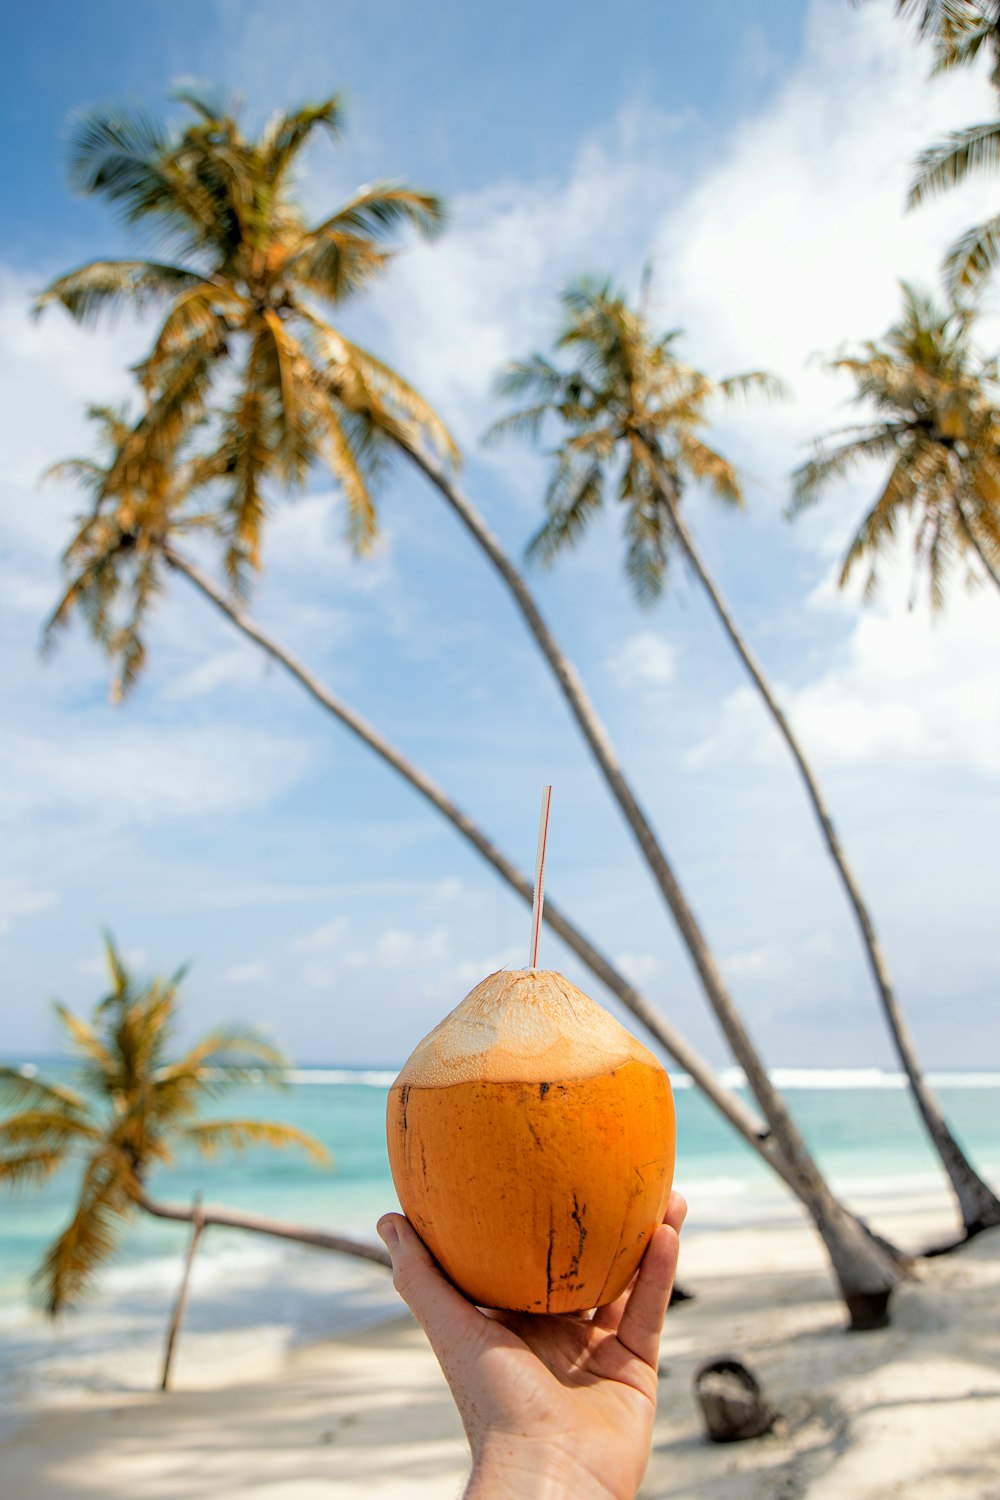 Una persona sosteniendo un coco en una playa